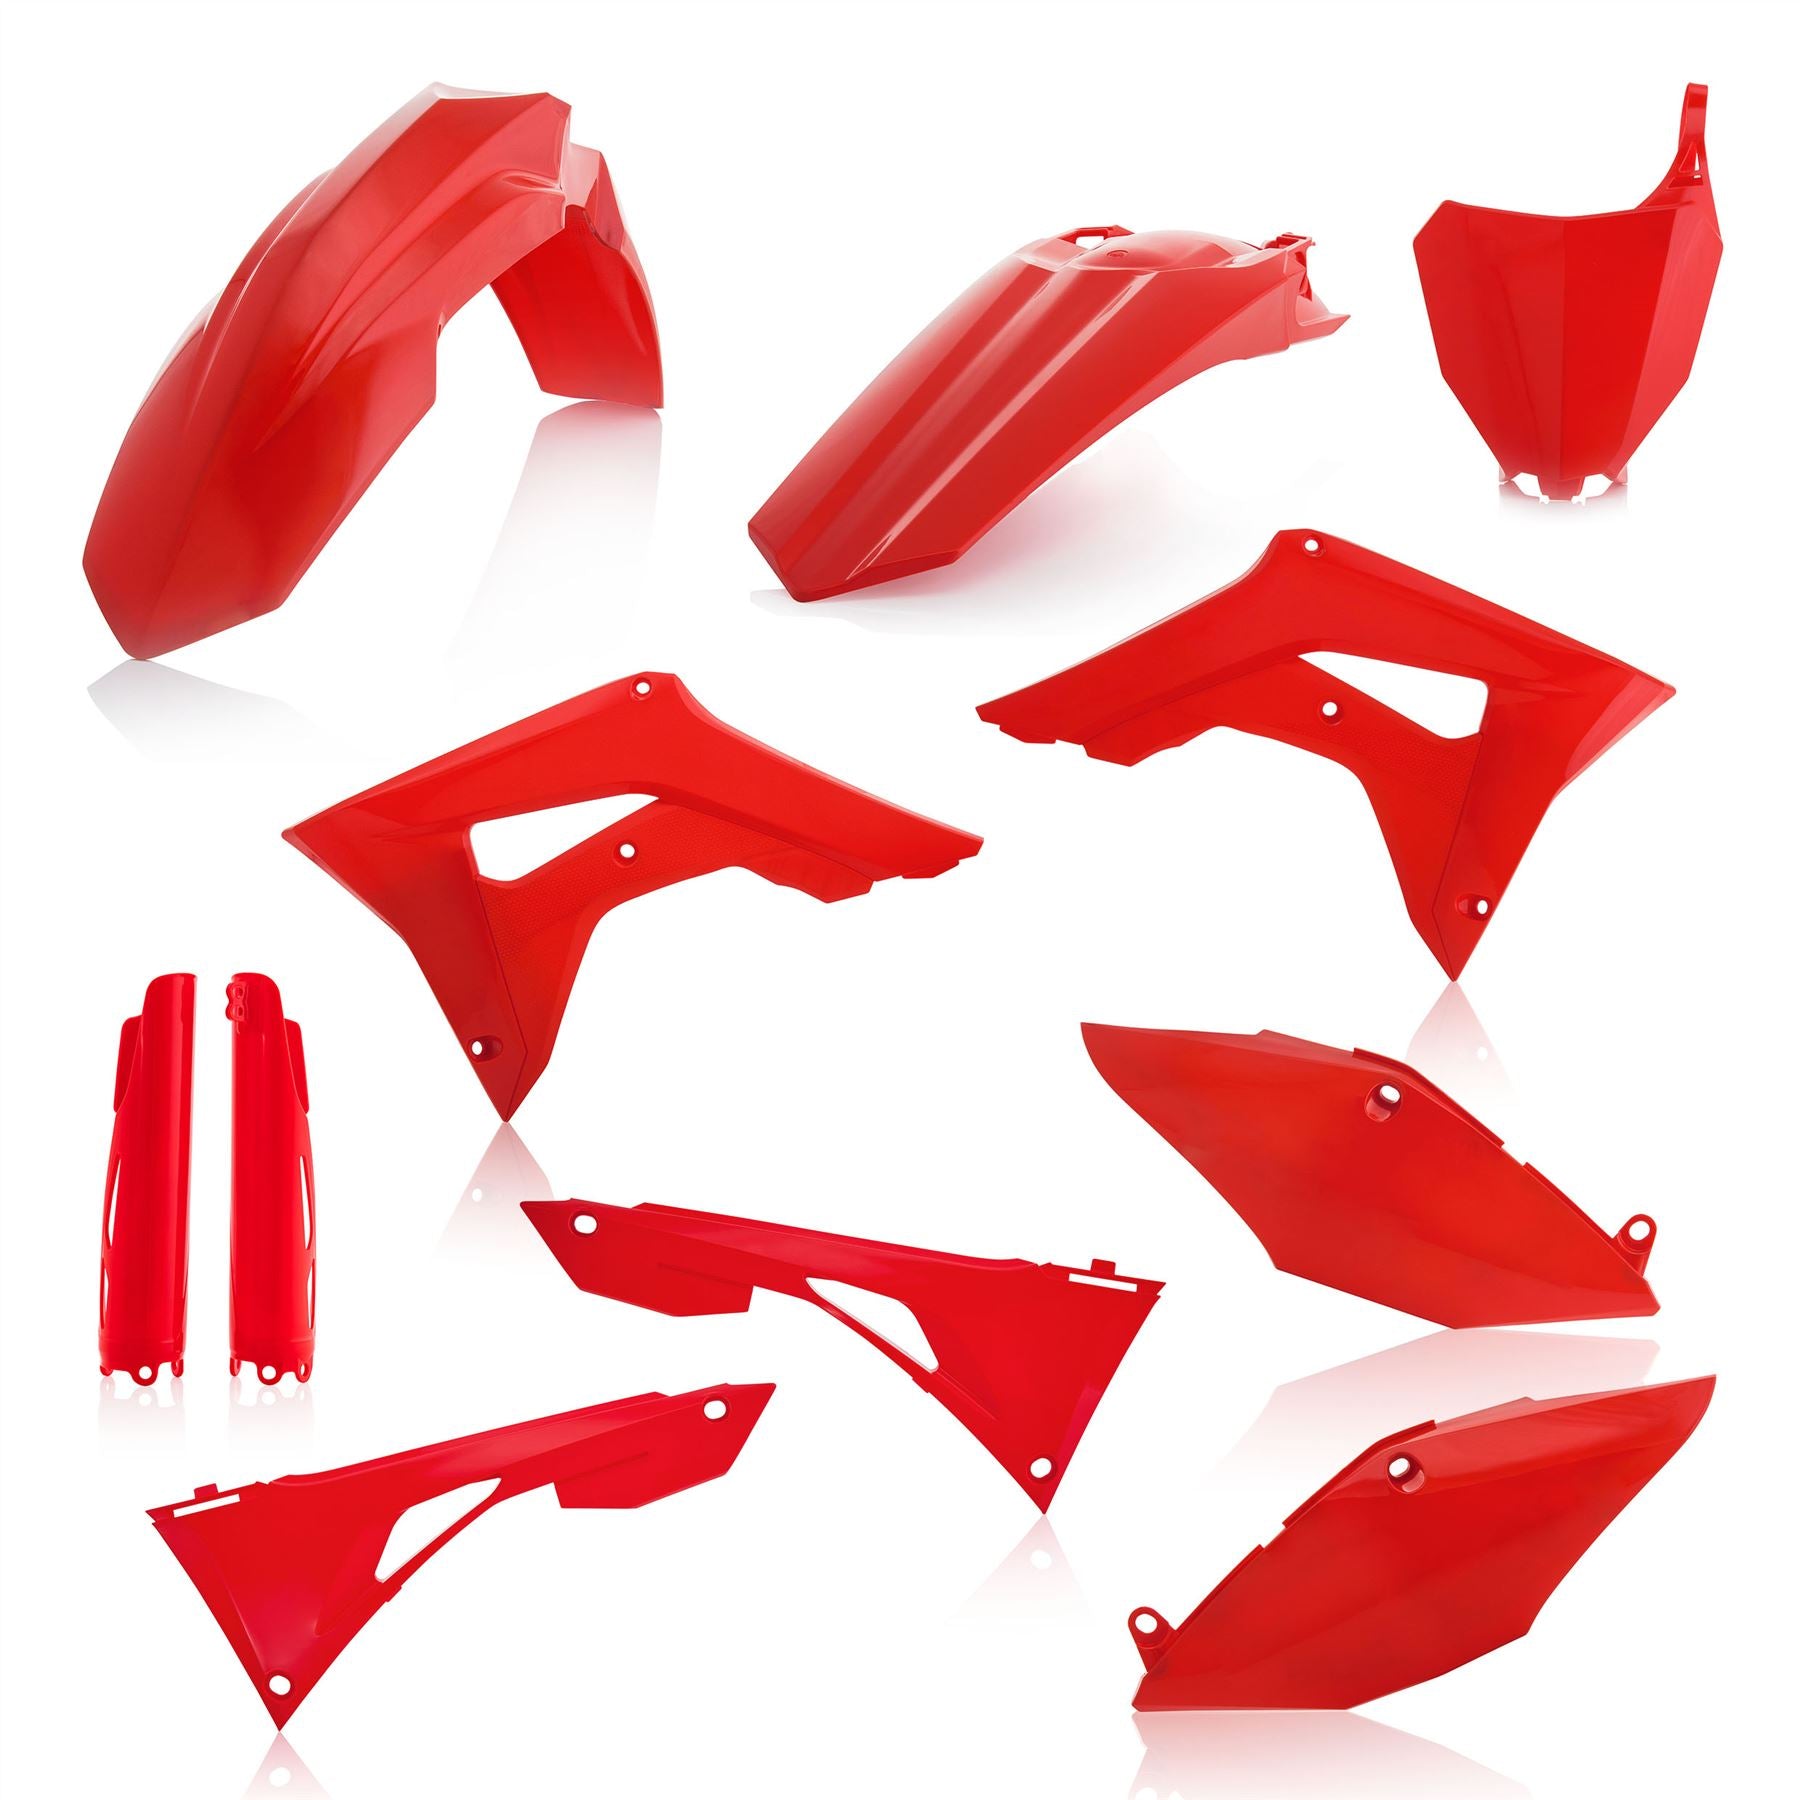 Acerbis Full Plastic Kit Red For Honda CRF 250R 2019-2021